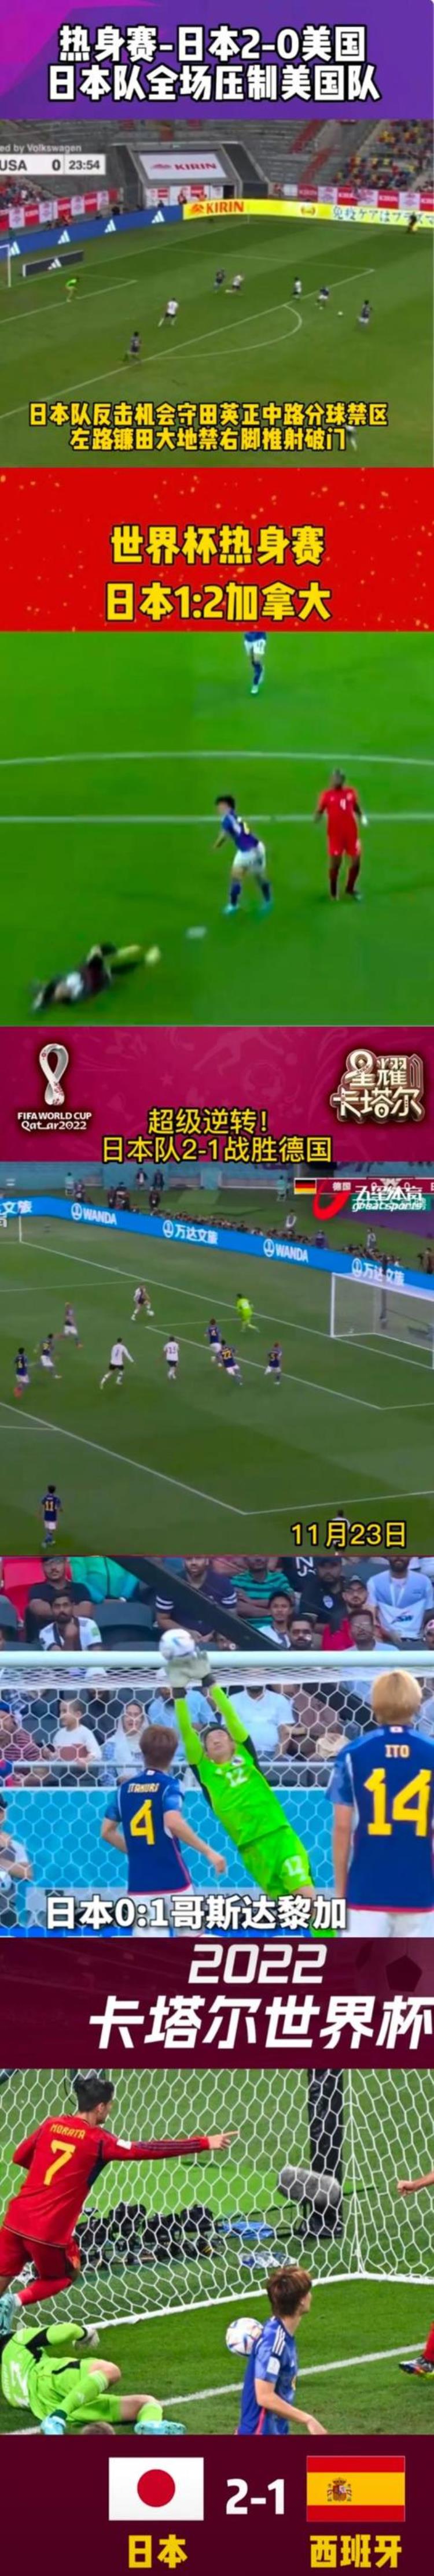 世界杯日本队输赢「世界杯日本队出线后分析过日本队必输原因是日本无力2连胜」